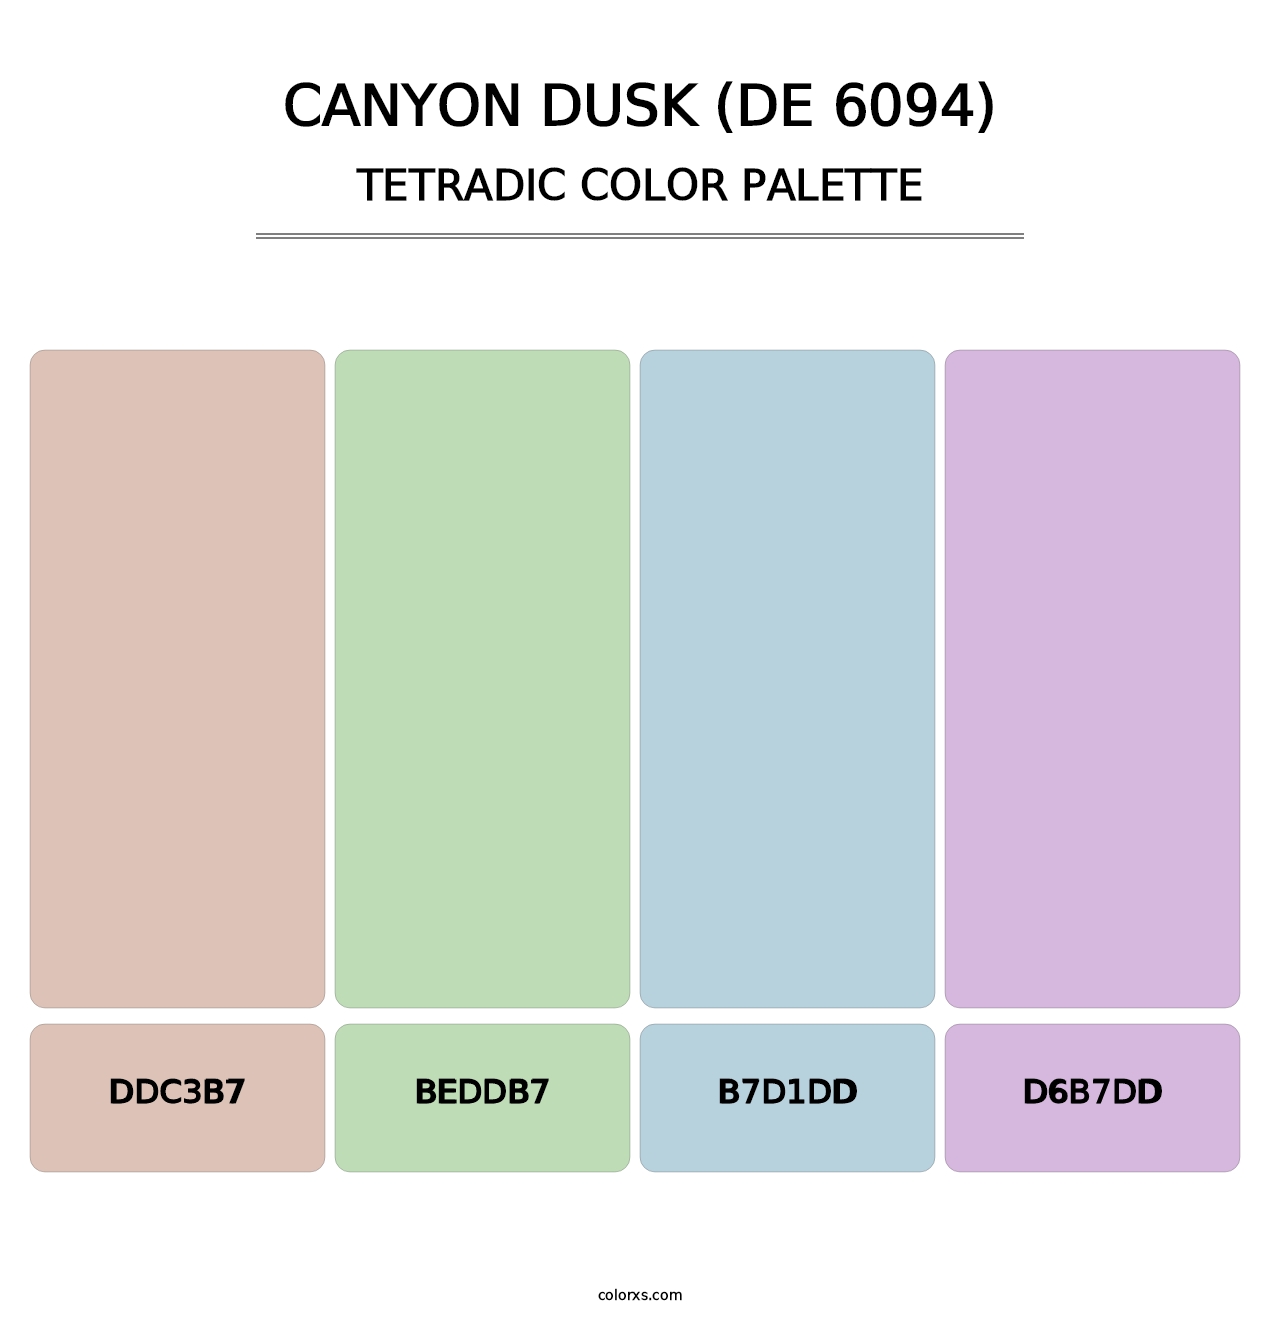 Canyon Dusk (DE 6094) - Tetradic Color Palette